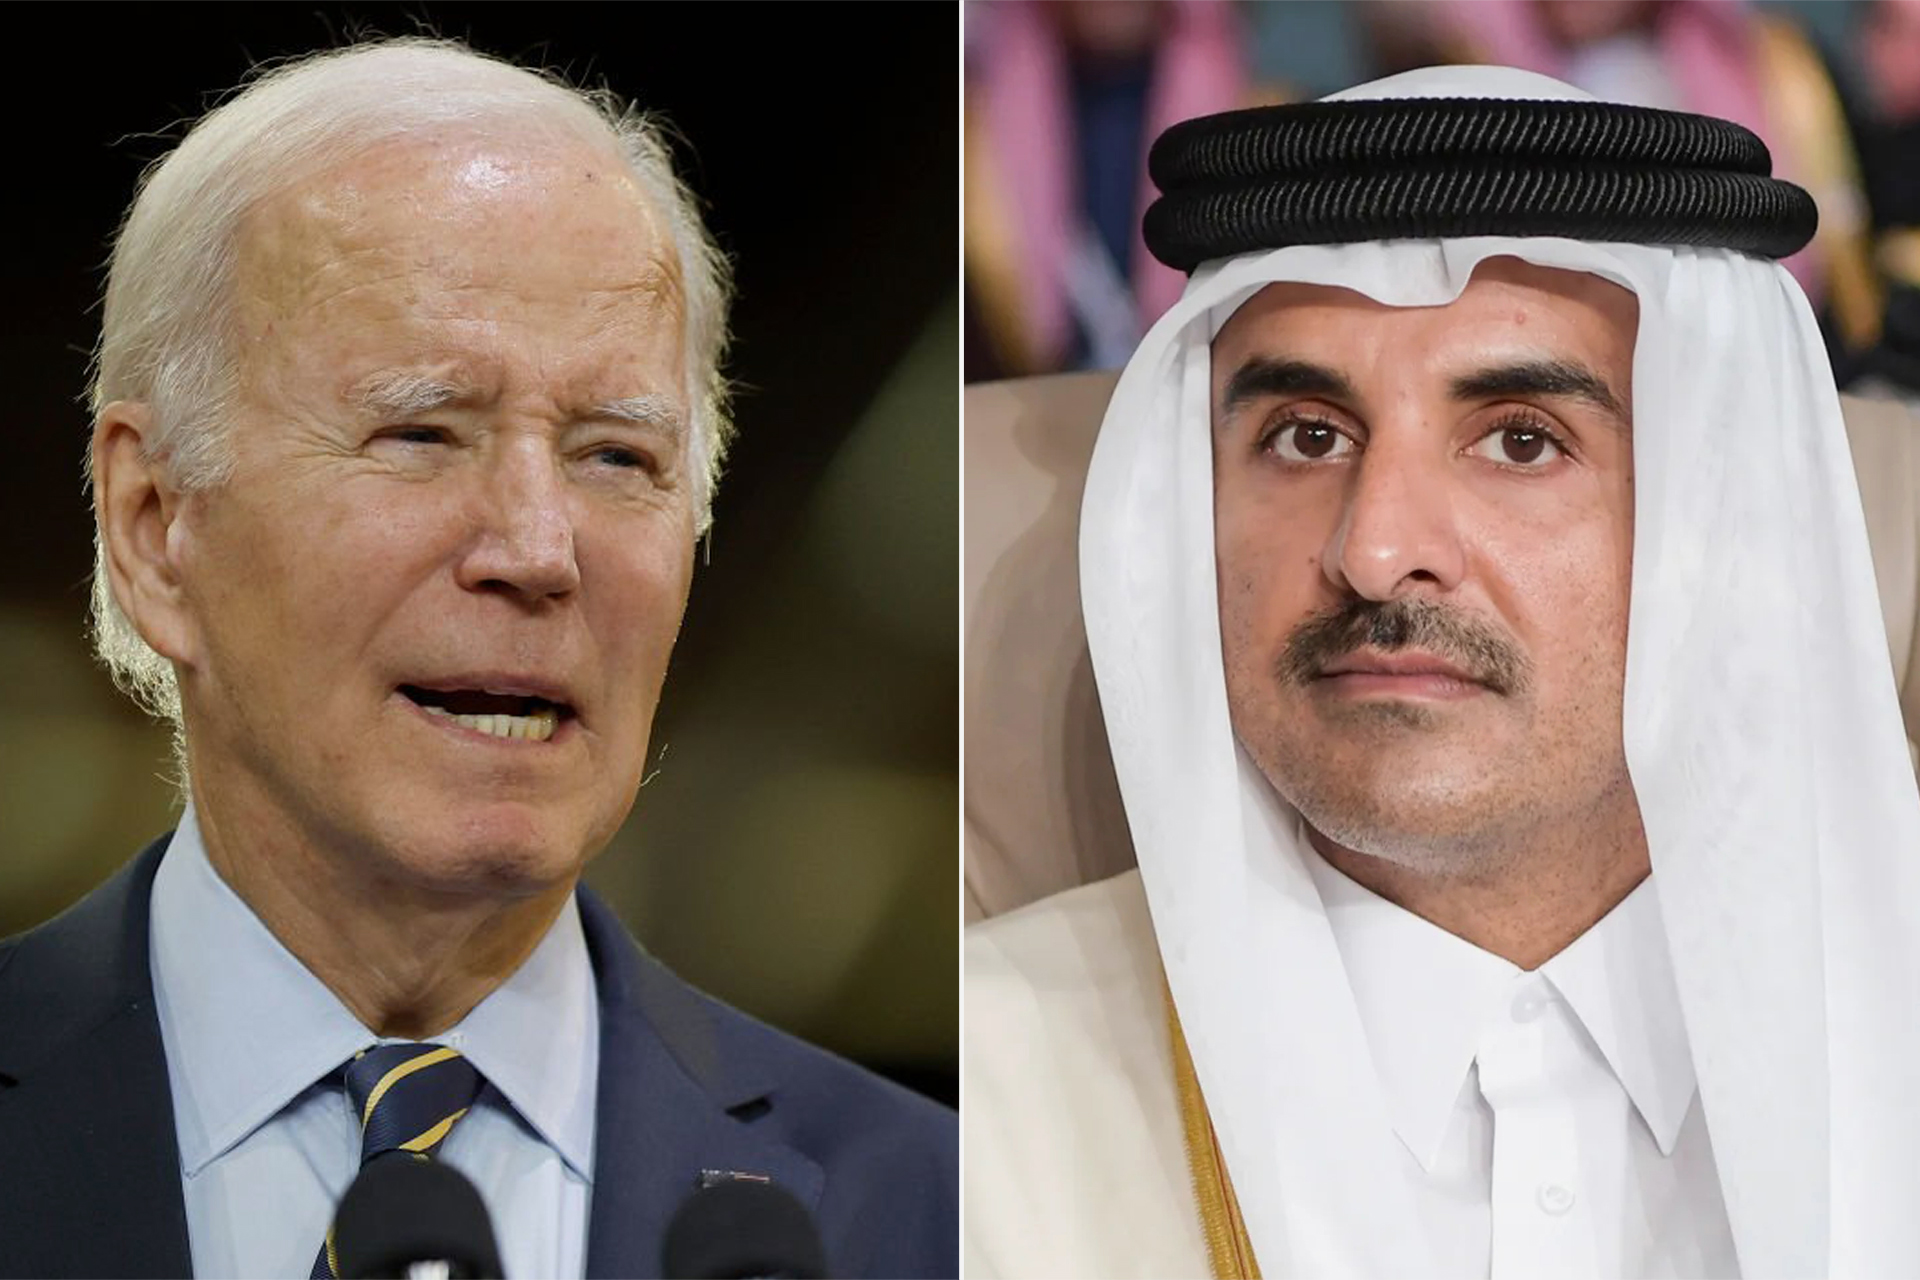 أمير قطر يتلقى اتصالا من الرئيس الأميركي لبحث تطورات غزة | أخبار – البوكس نيوز